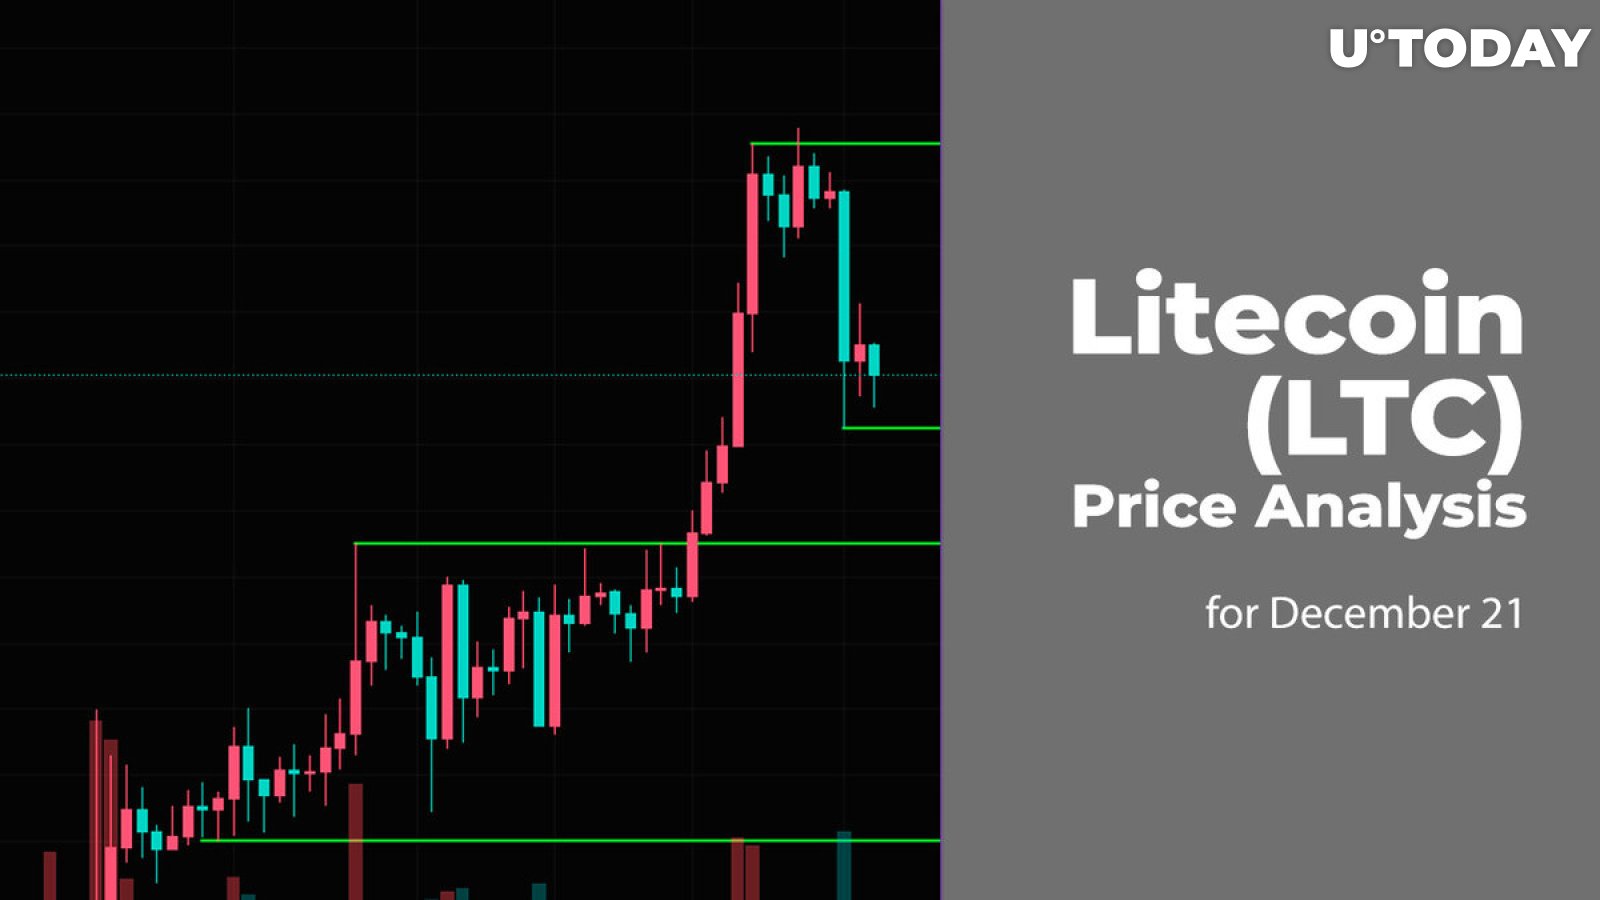 Litecoin (LTC) Price Analysis for December 21